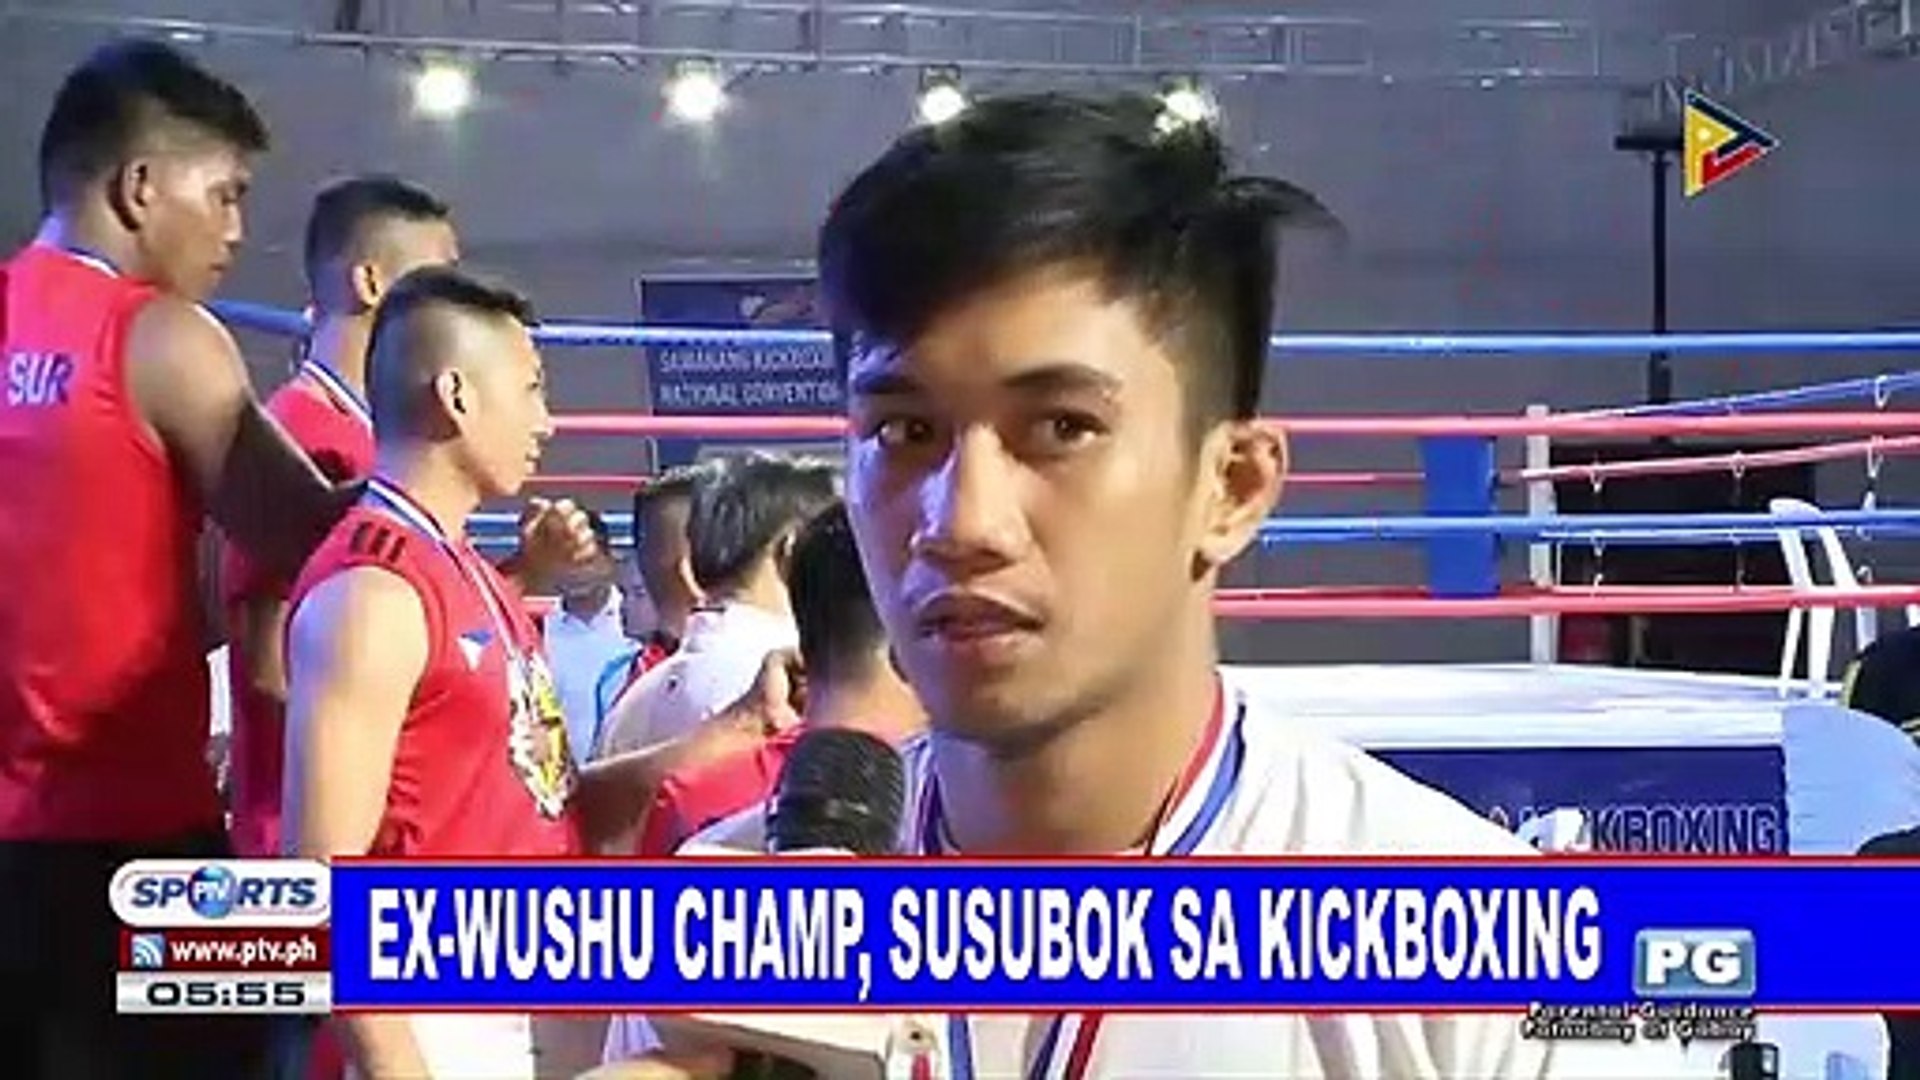 Ex-wushu champ, susubok sa kickboxing